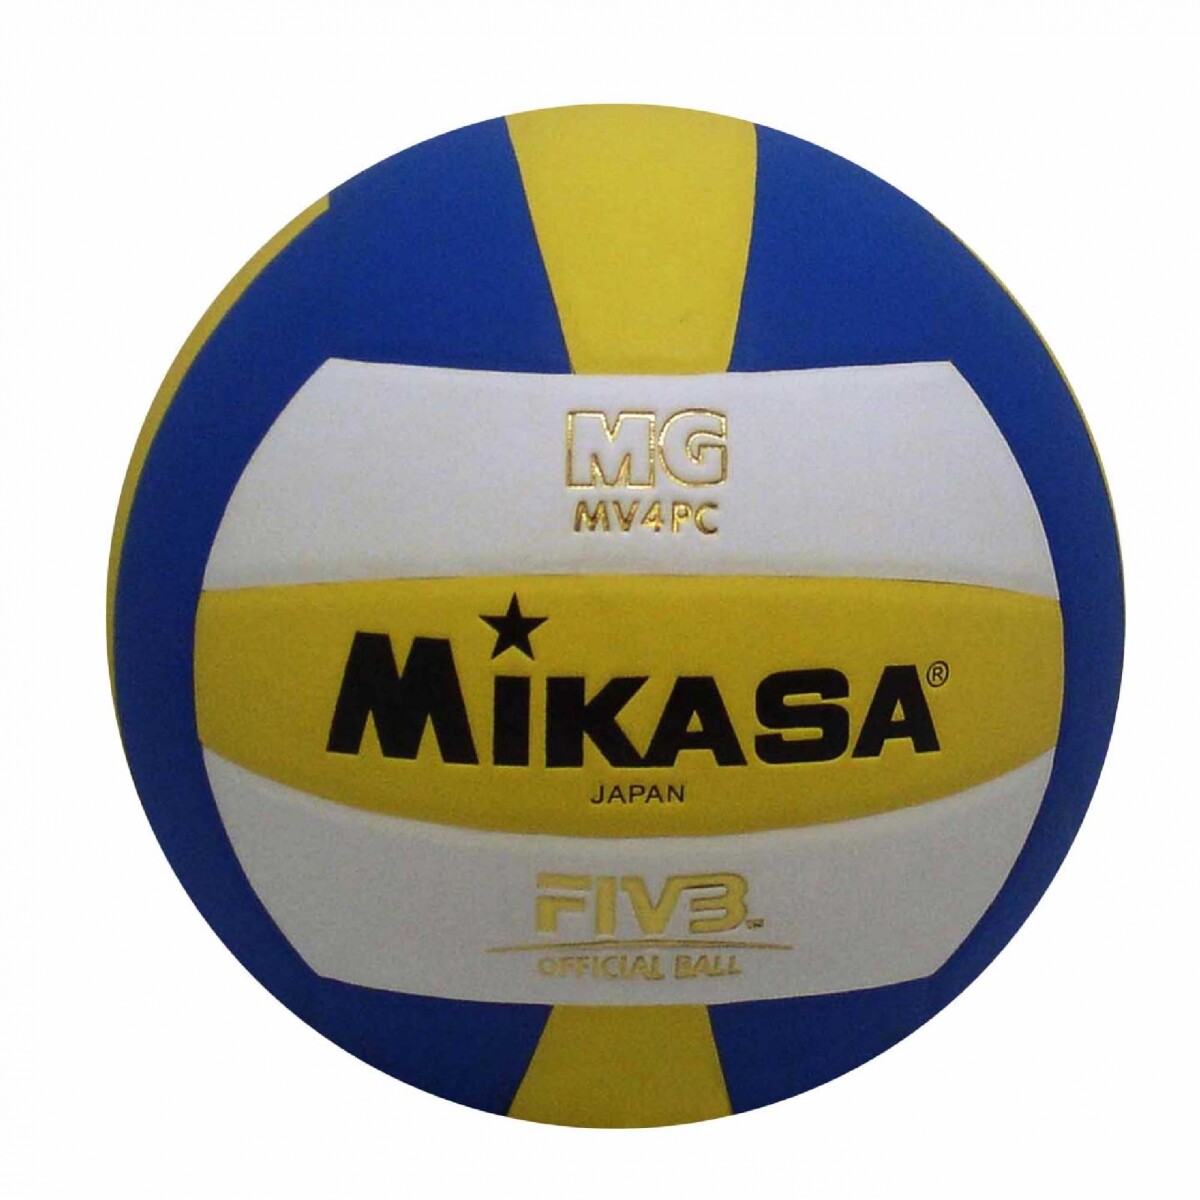 Pelota Mikasa MV4PC Balón De Volleyball - Azul, Amarillo y Blanco 